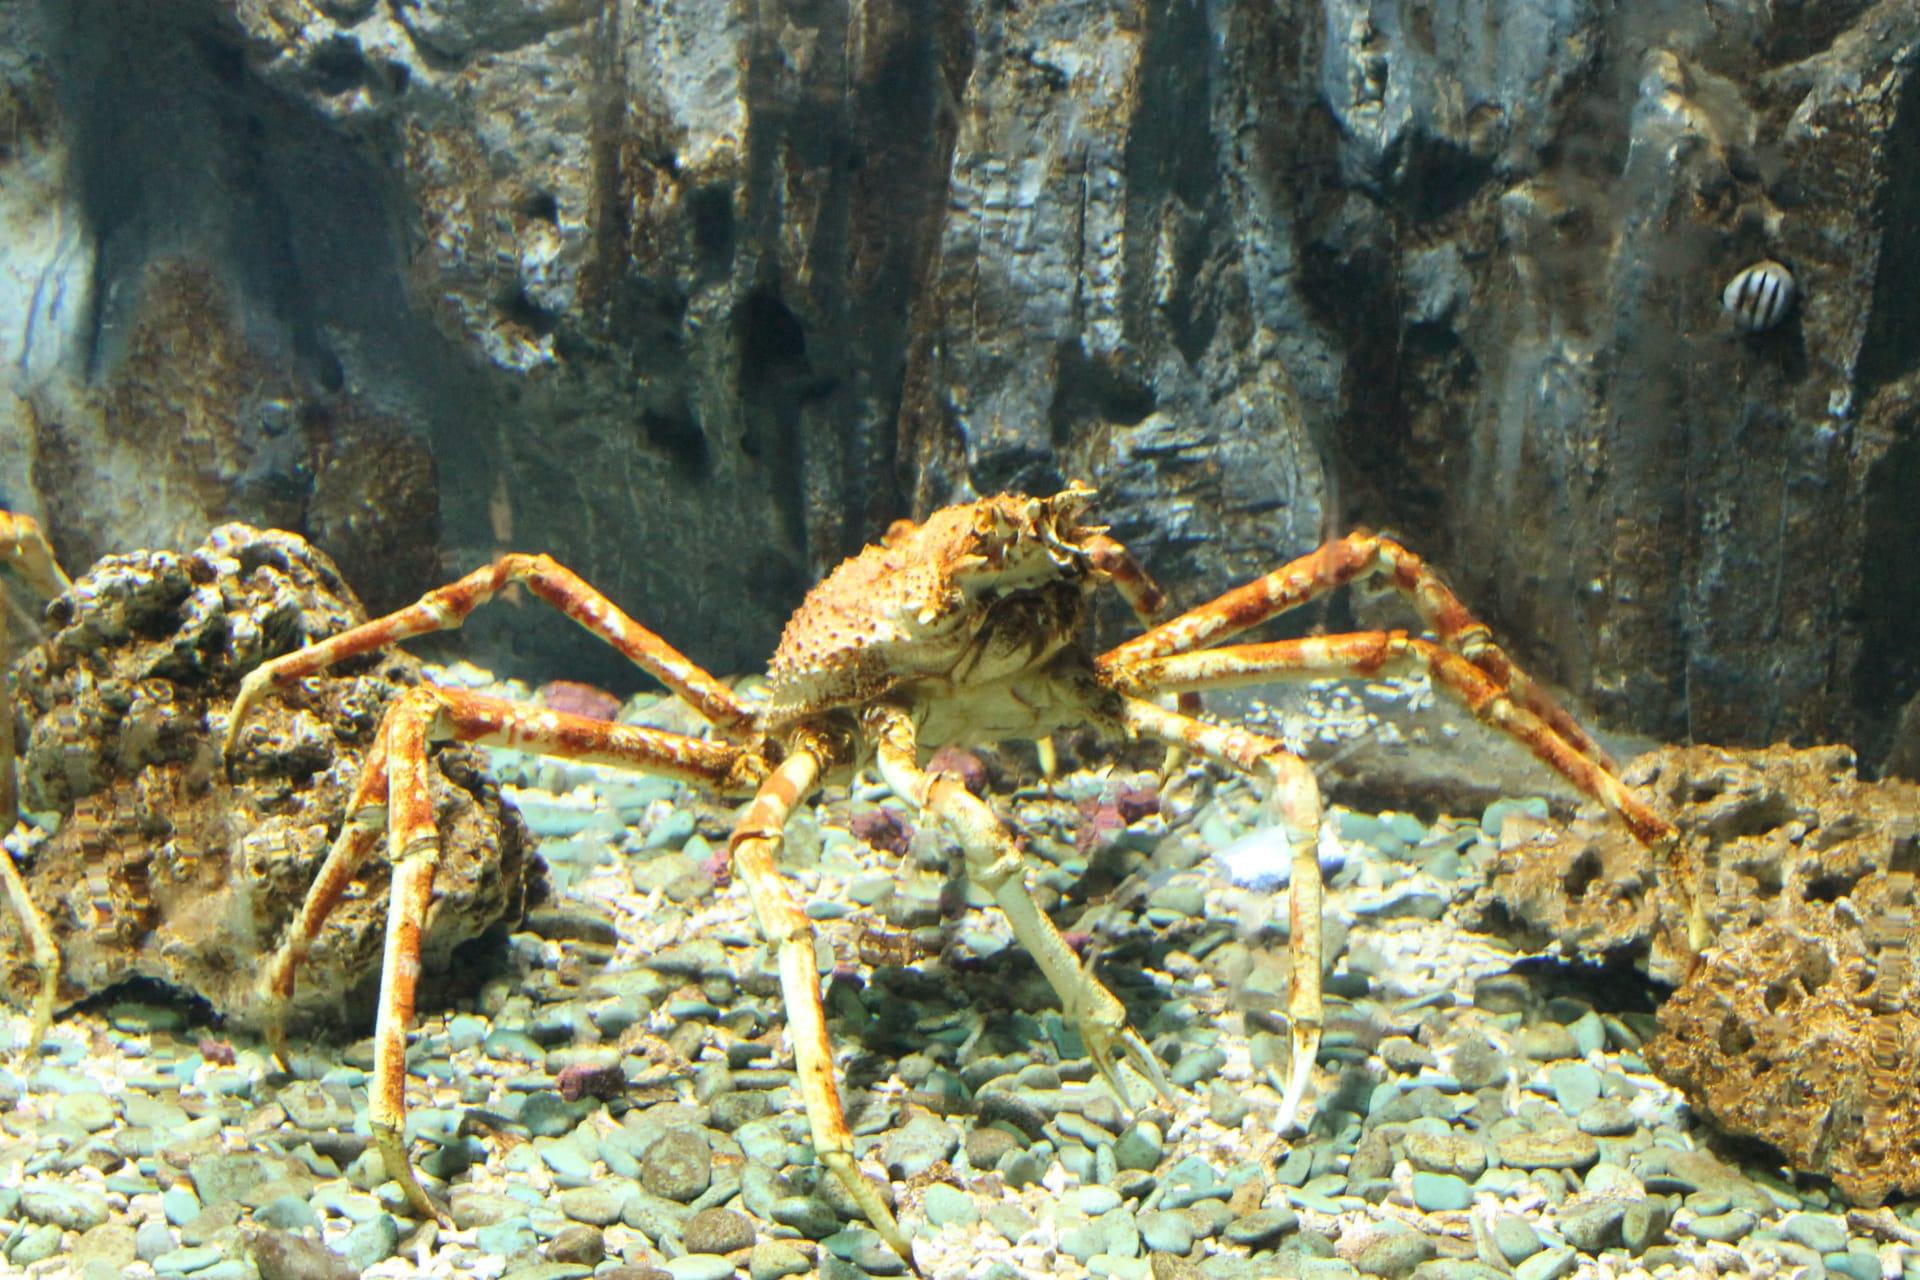 Spider crab pictures